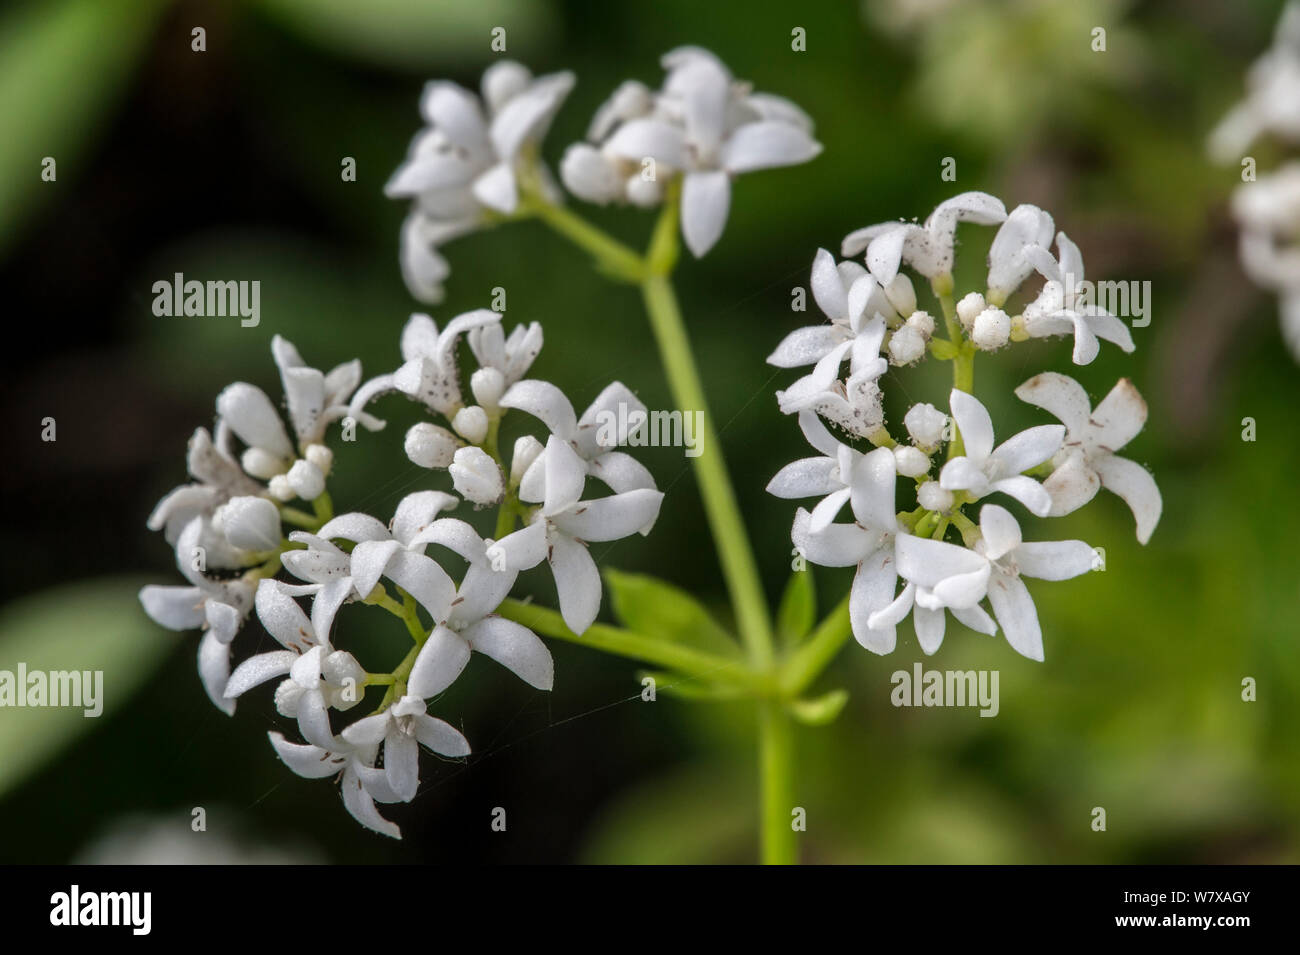 Sweet woodruff (Galium odoratum) in flower, Belgium, April. Stock Photo